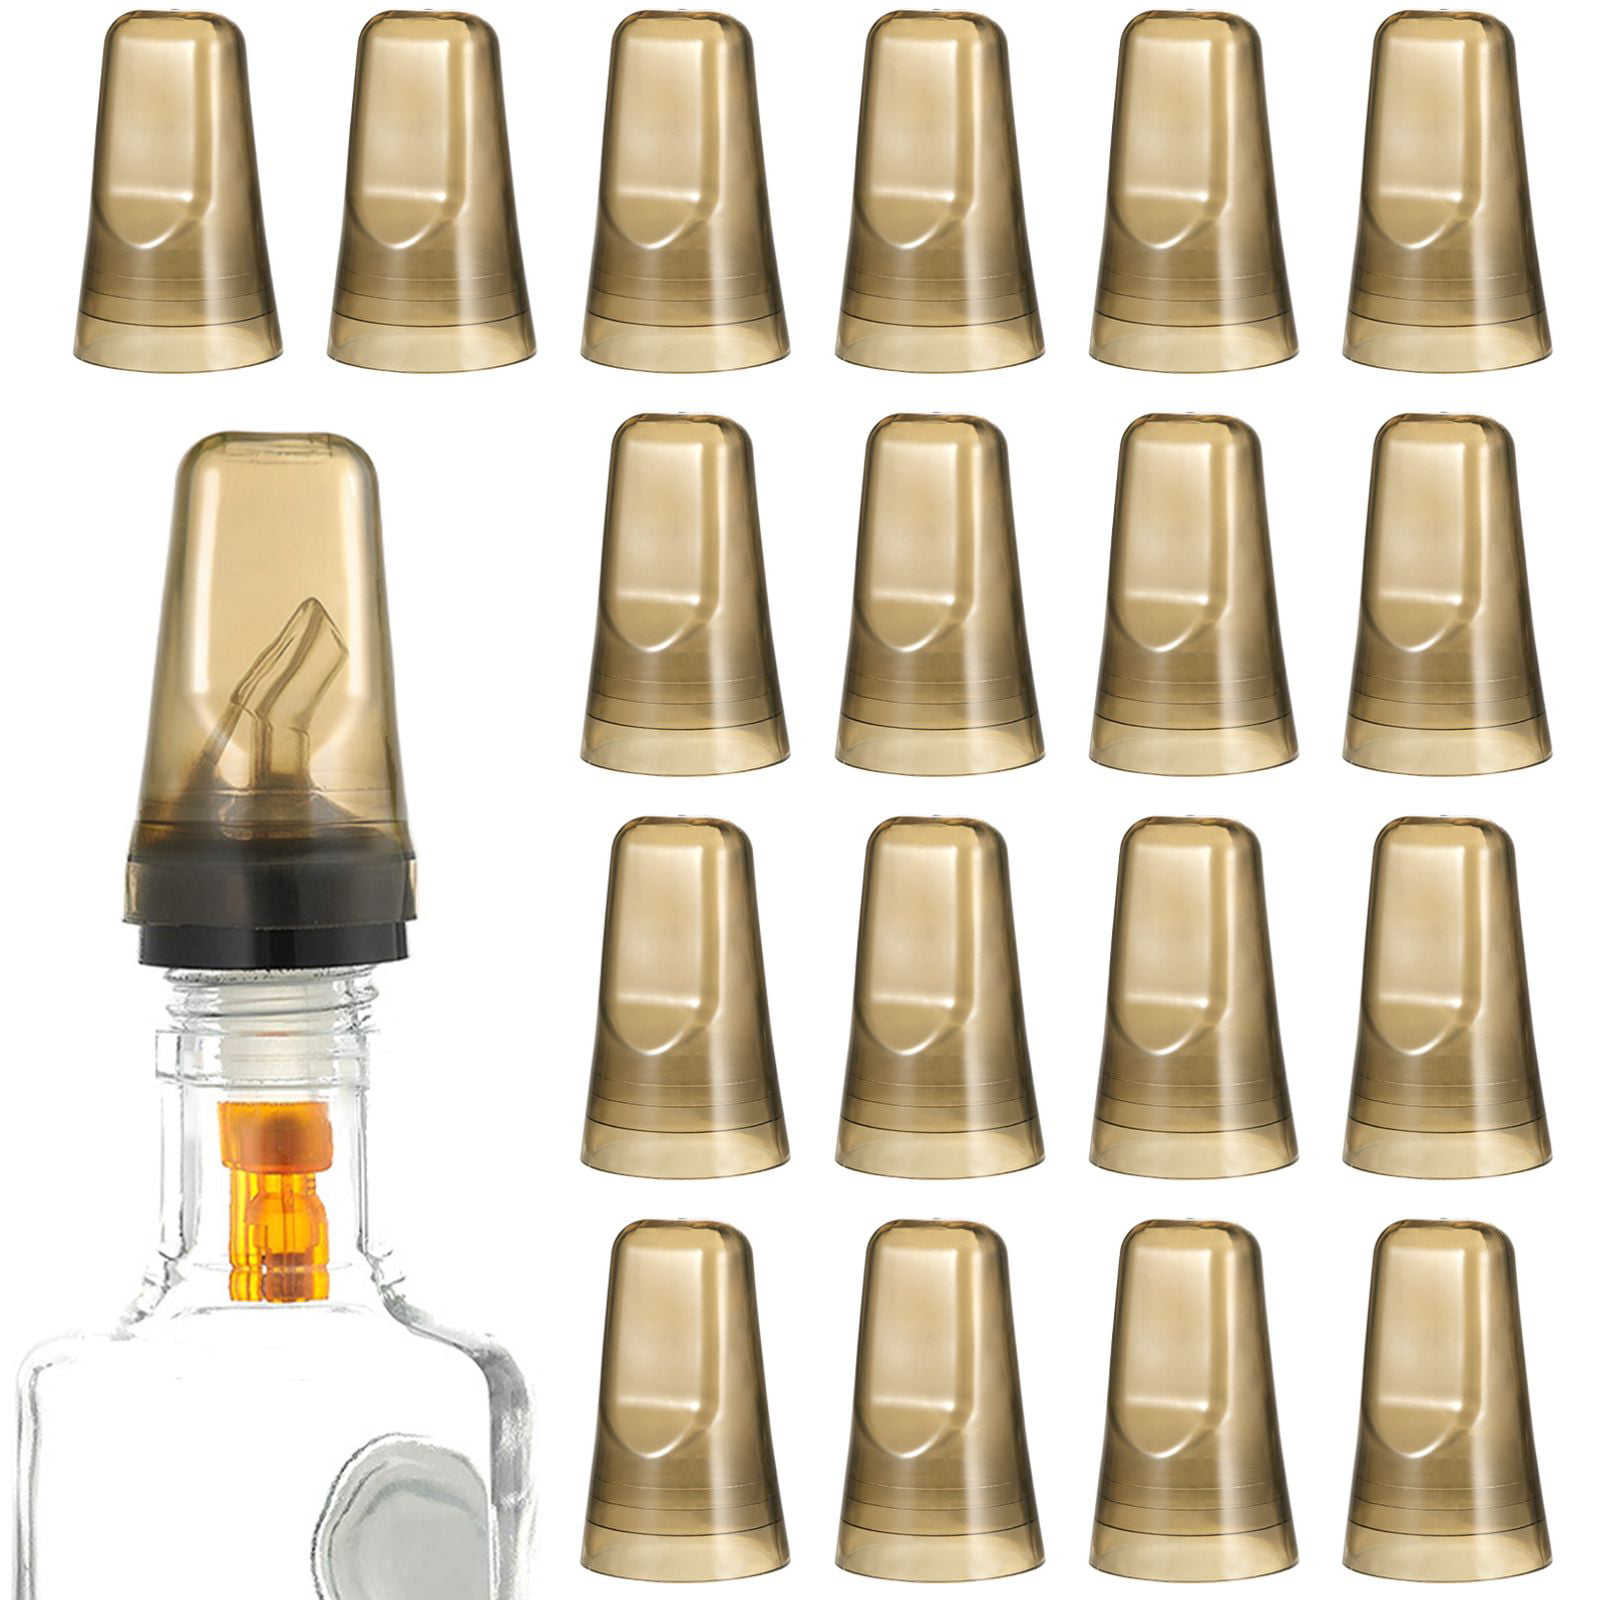 [24 PACK] Translucent Liquor Pourer Cover Caps, Bottle Top Cover, Spout  Cover, Bar Supplies, Restaurant Supplies, BPA Free Plastic, Cap Covers